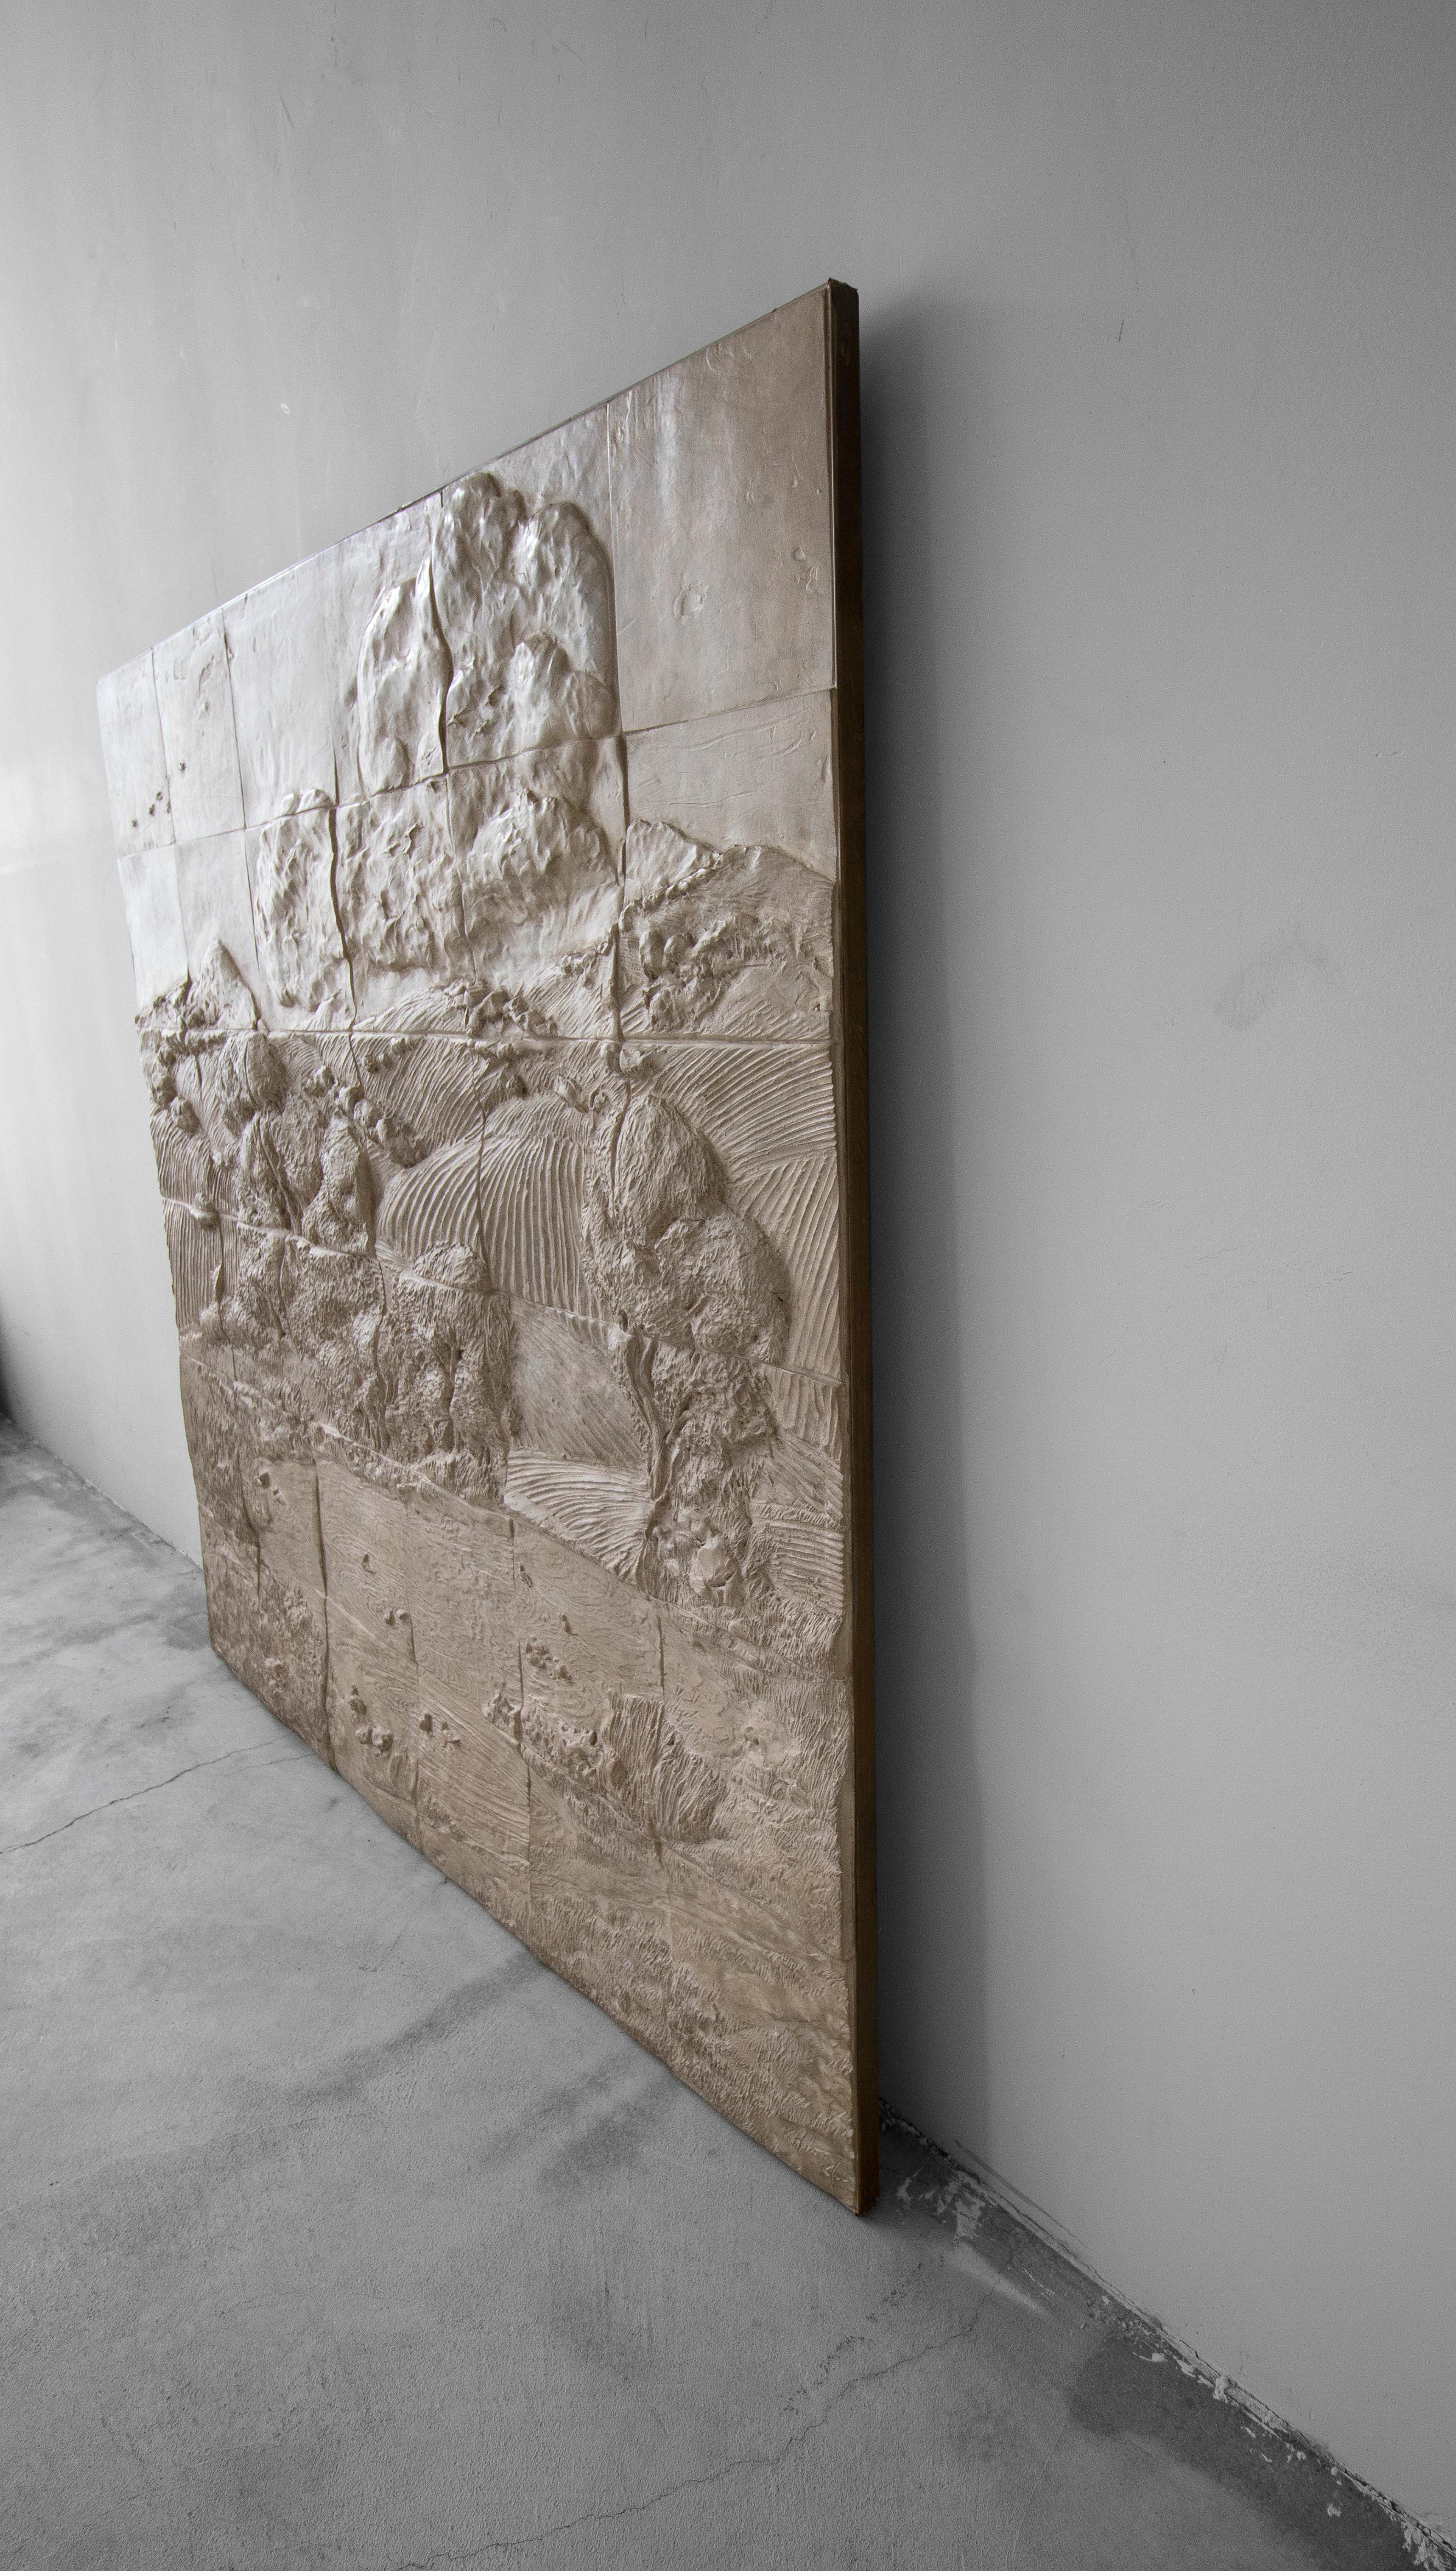 Appliqué Massive Vintage Italian Landscape Relief Art Tile Wall Hanging